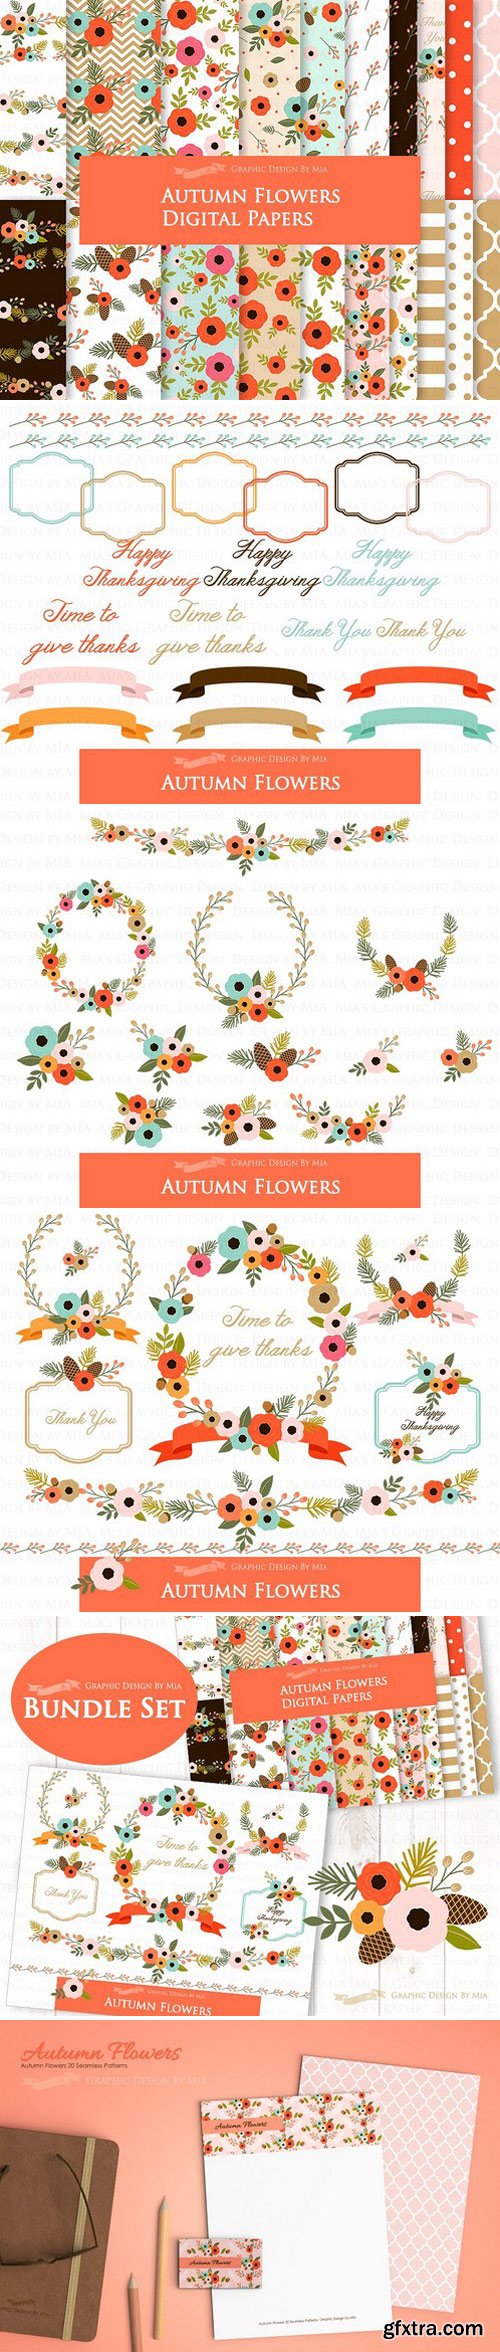 CM - Autumn Flowers Clipart+Pattern set 1901243